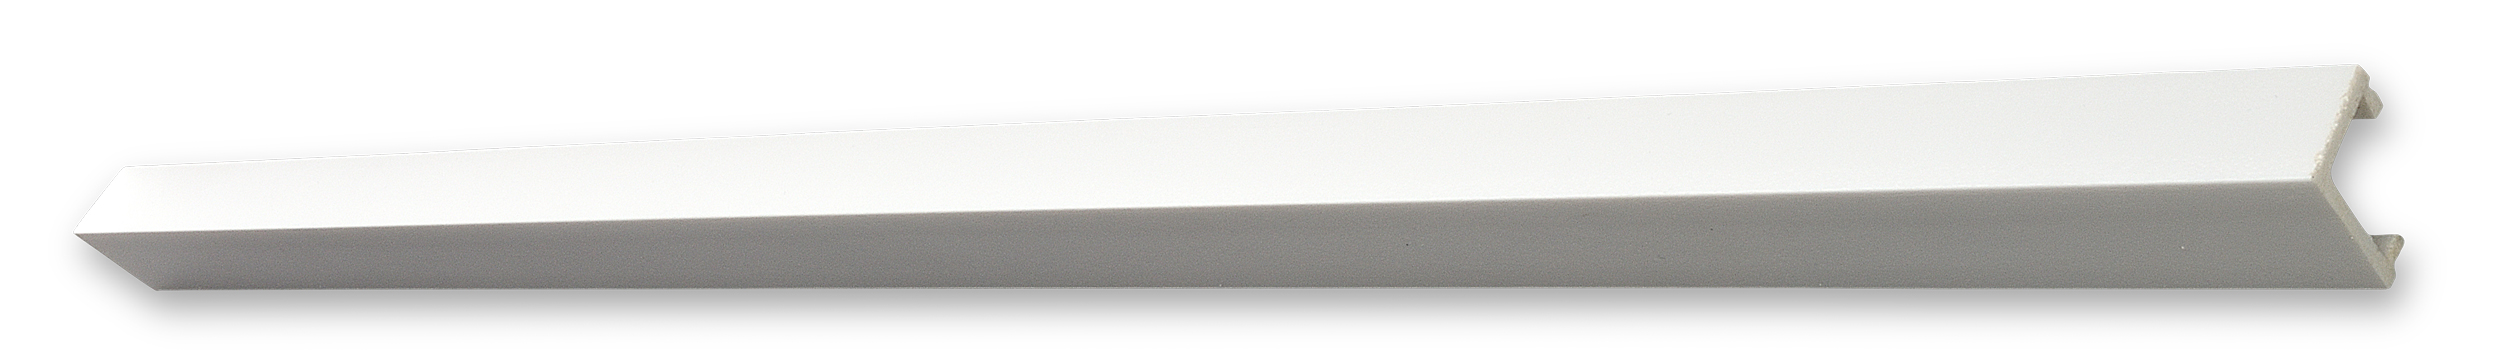 DECOSA Moulure d'angle KP25 (cache-câbles) - polystyrène extra dur - blanc - 20 x 25 mm - longueur 2 m